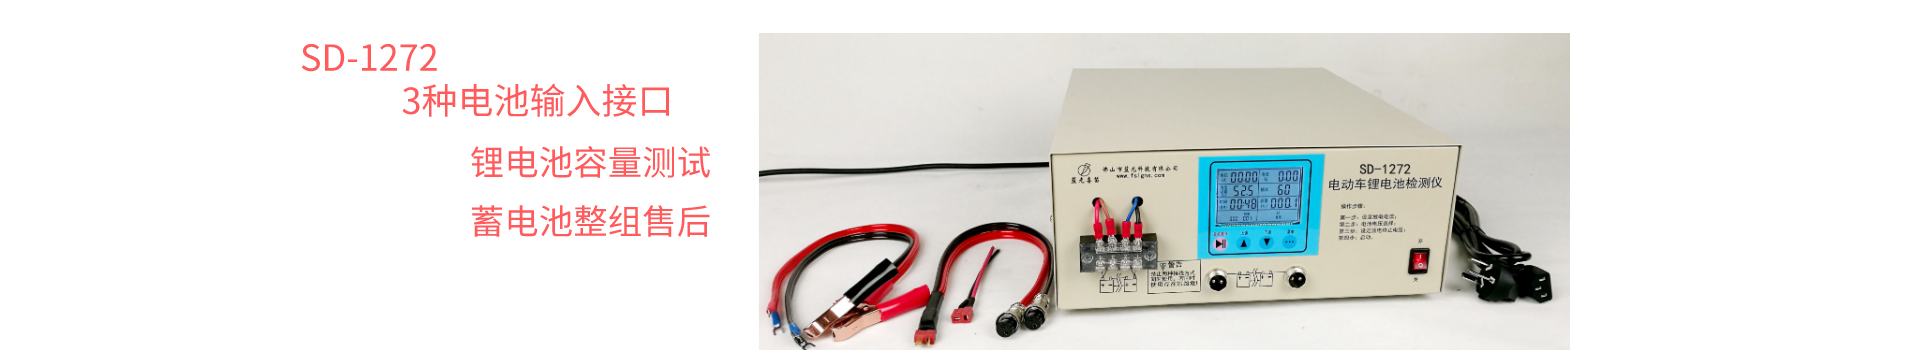 锂电池放电检测仪SD-1272